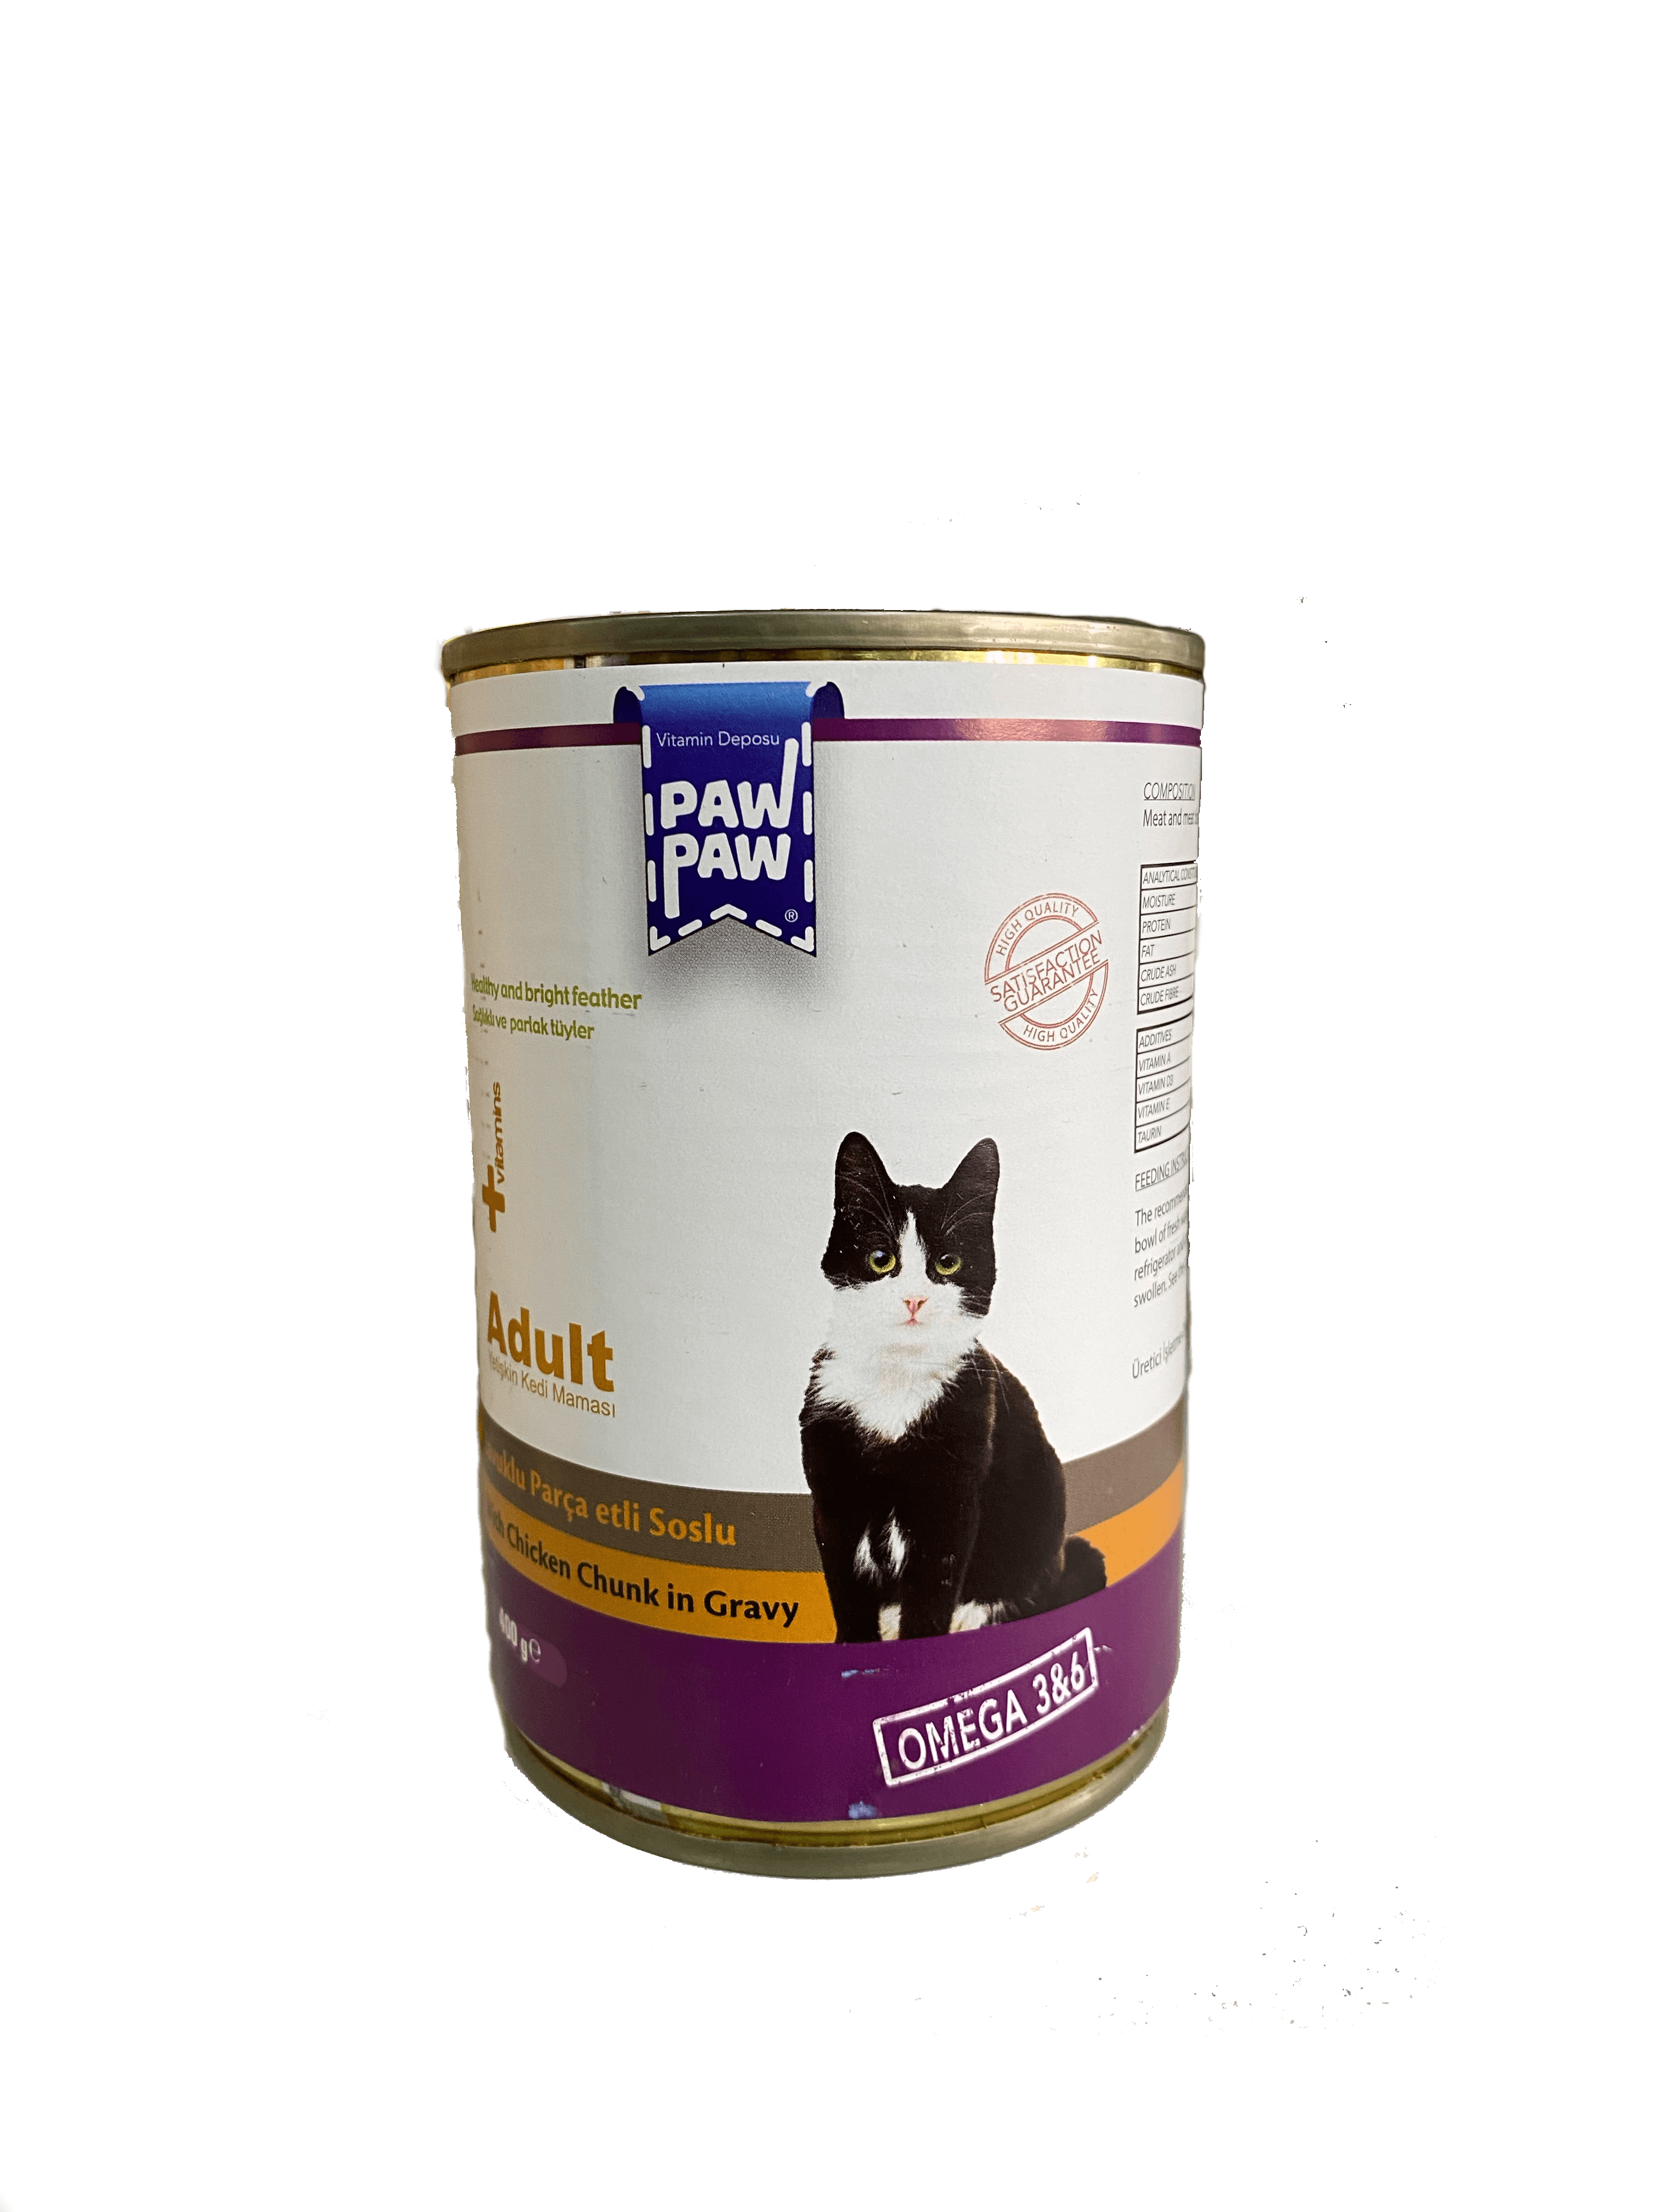 Pawpaw Tavuk Etli Yetişkin Kedi Maması, 400 gram Tavuk Etli Yetişkin Kedi Konserve